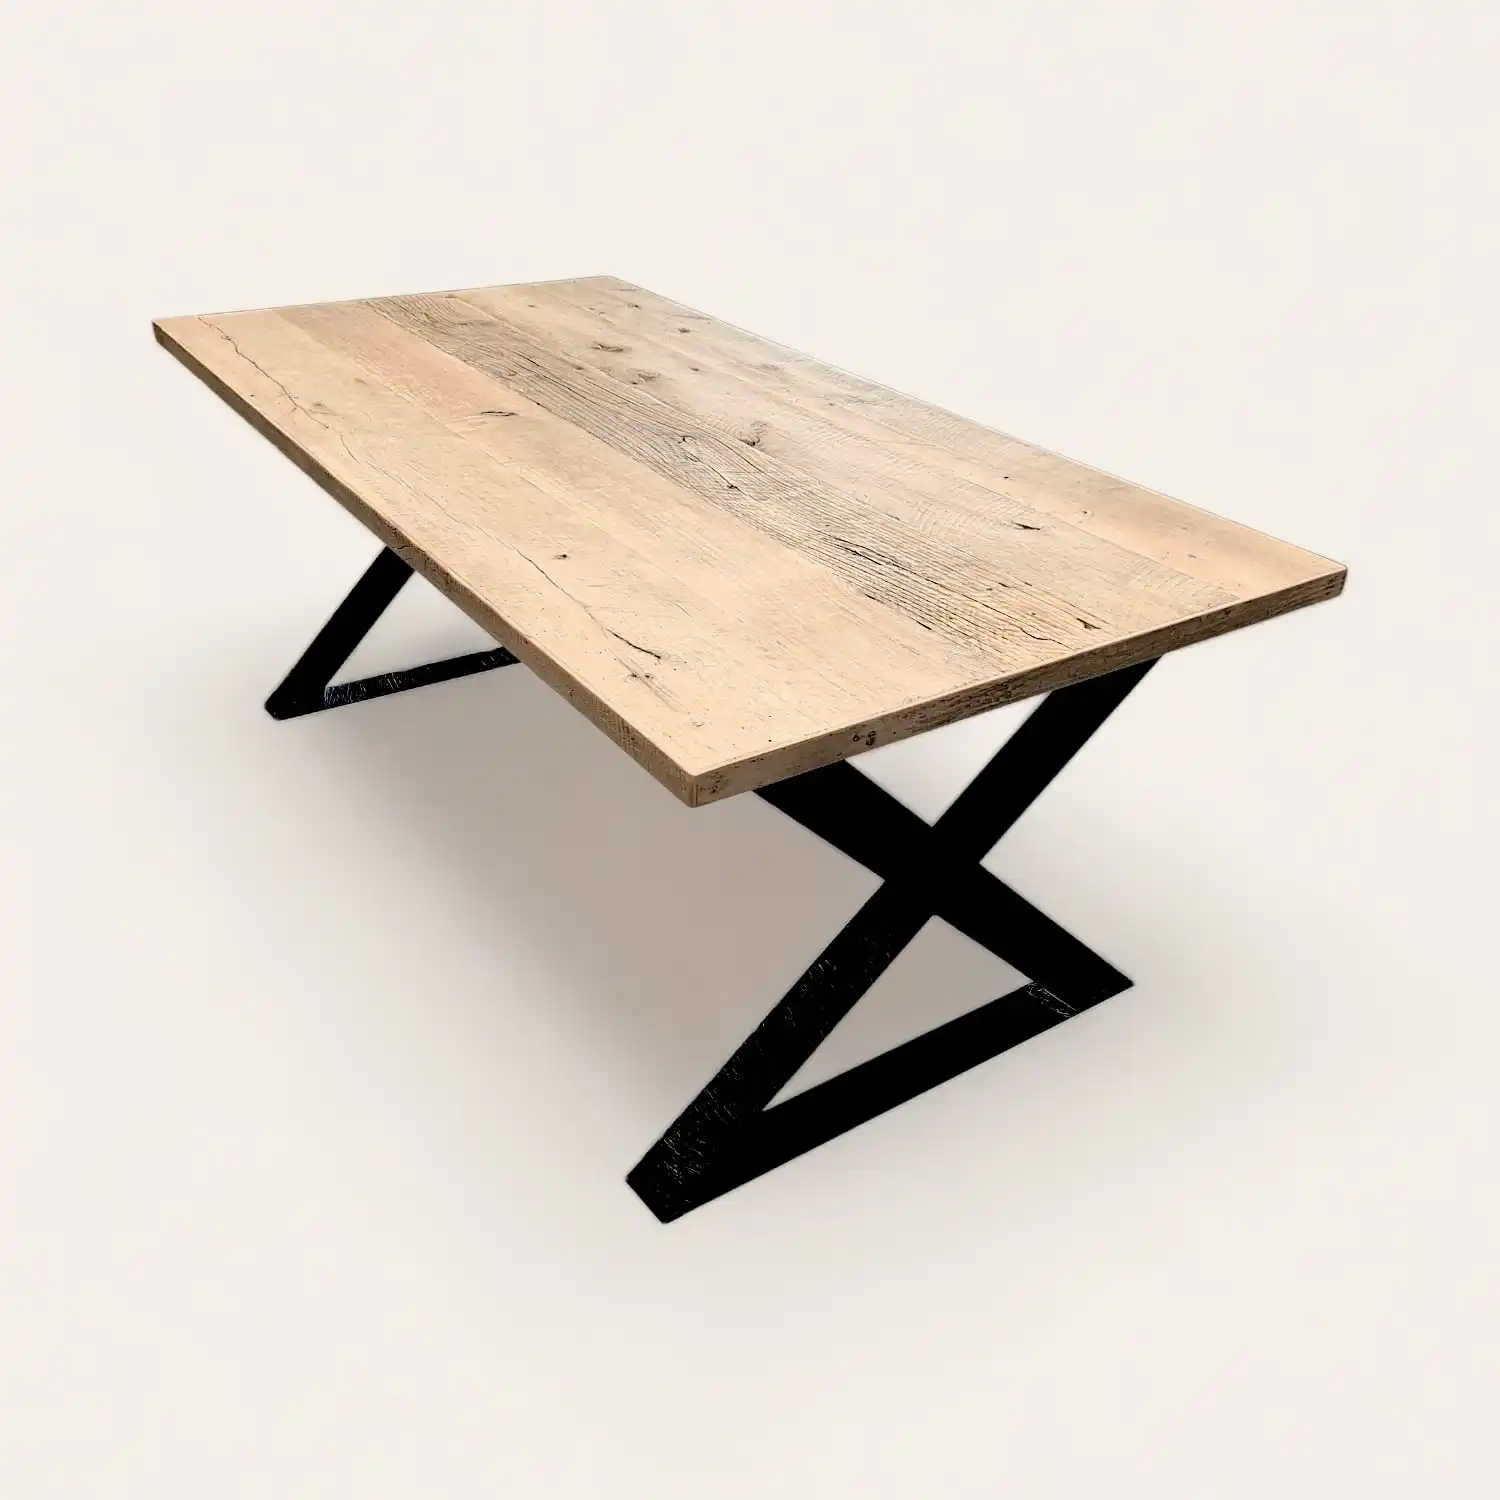  Une ancienne table en bois avec des pieds métalliques noirs. 